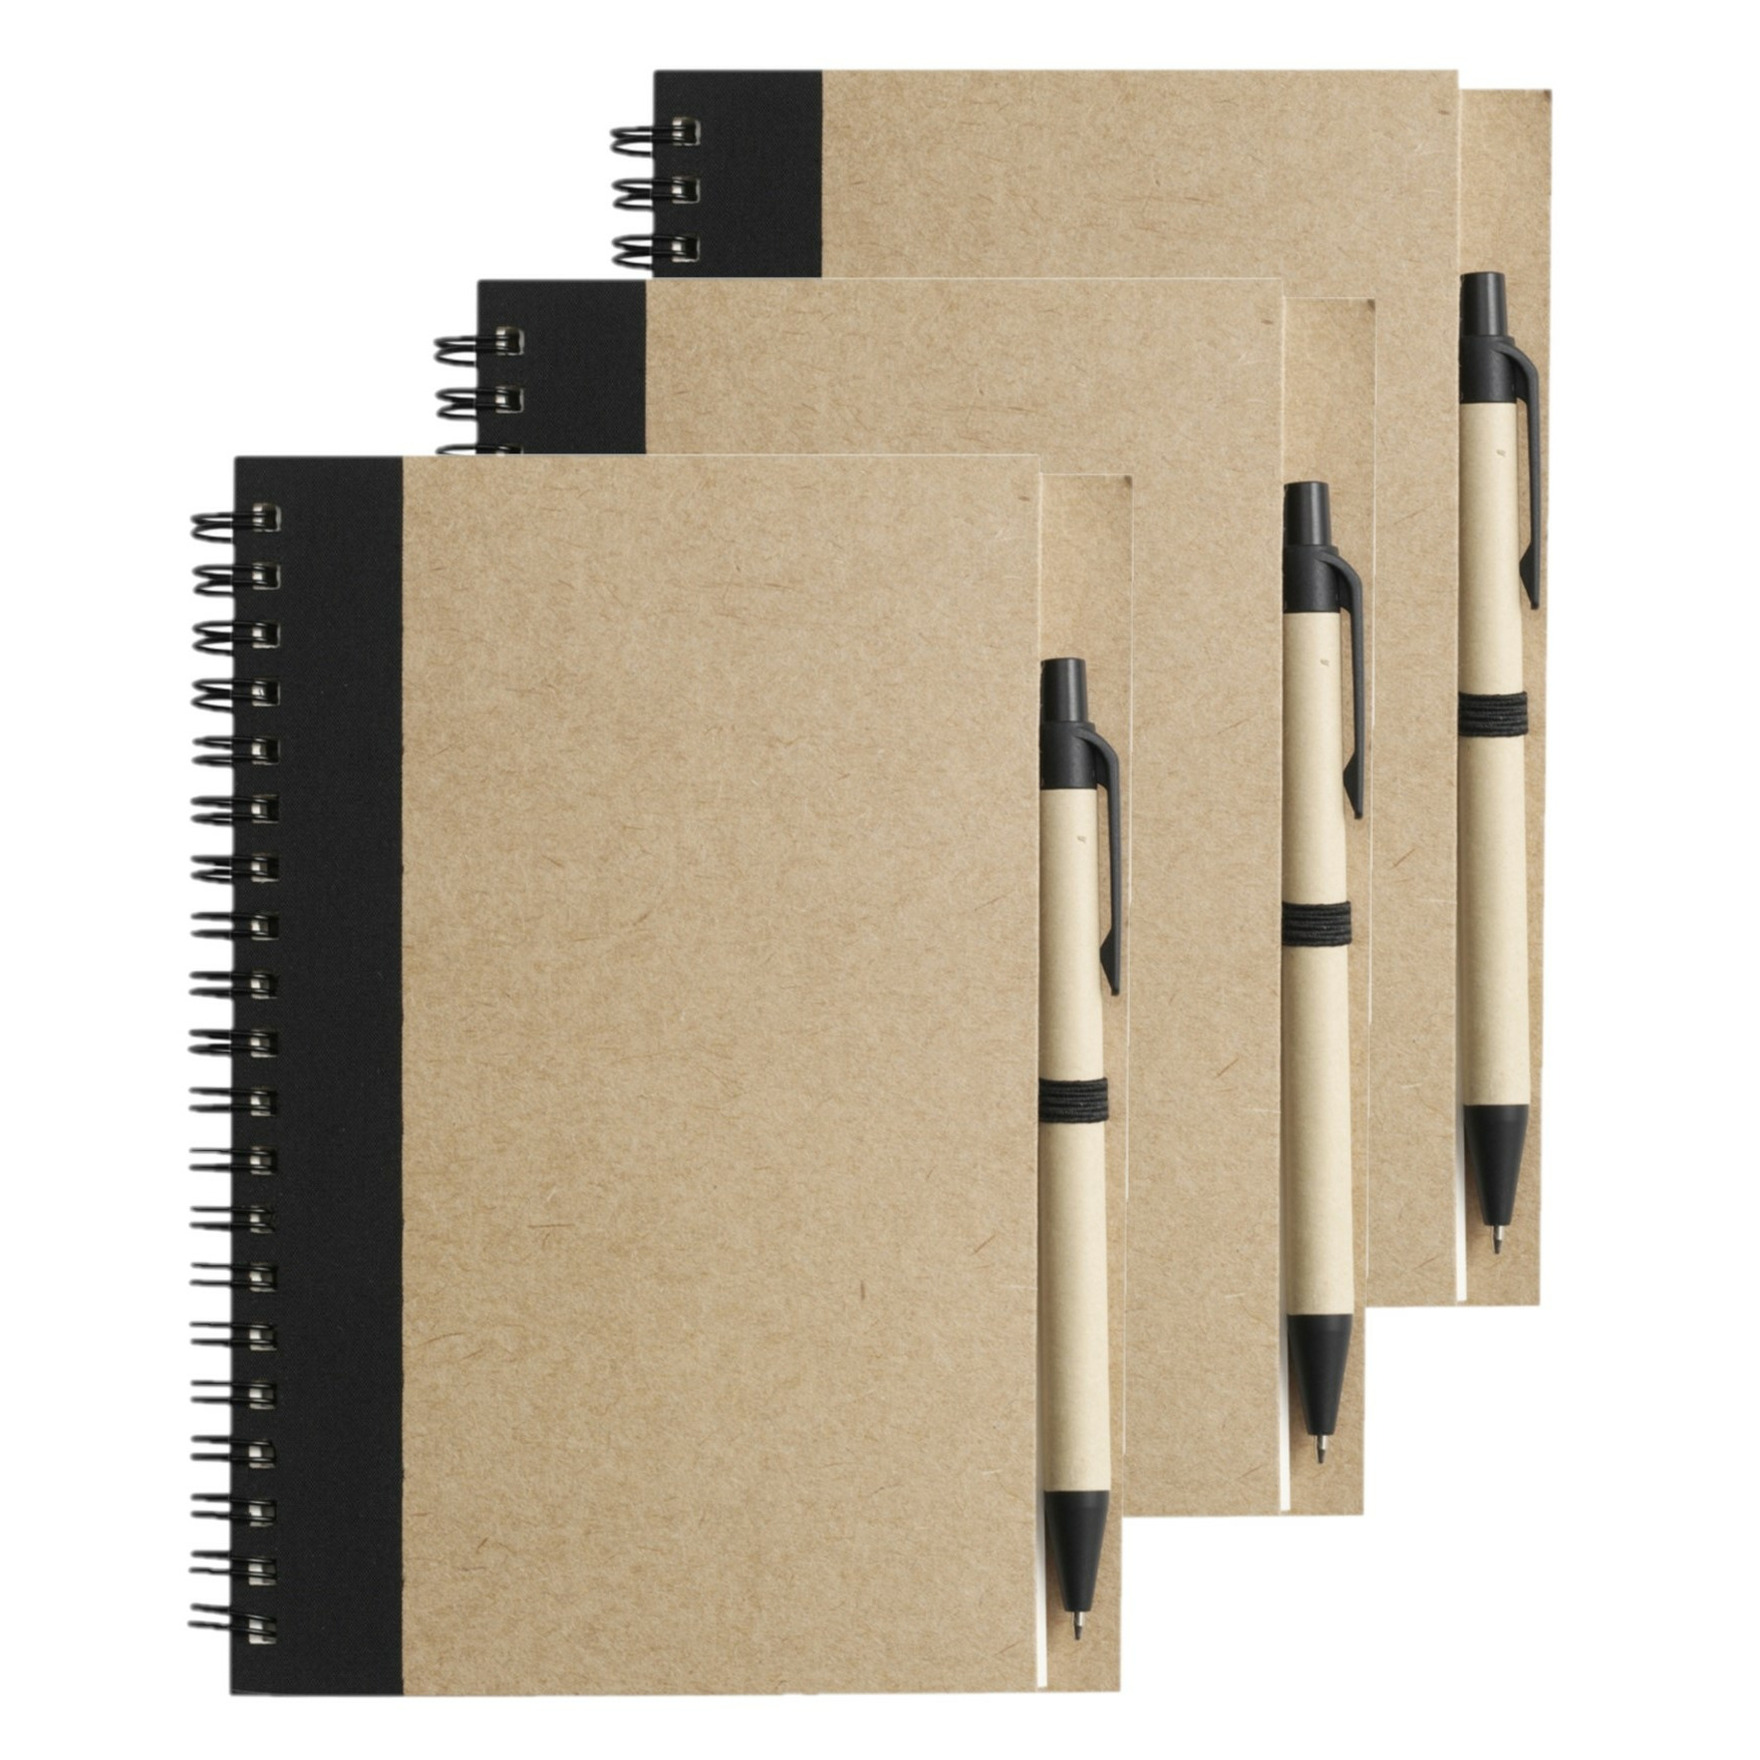 Notitie boekje-blok met balpen 6x harde kaft beige-zwart 18 x 13 cm 60 bladzijden geliniee